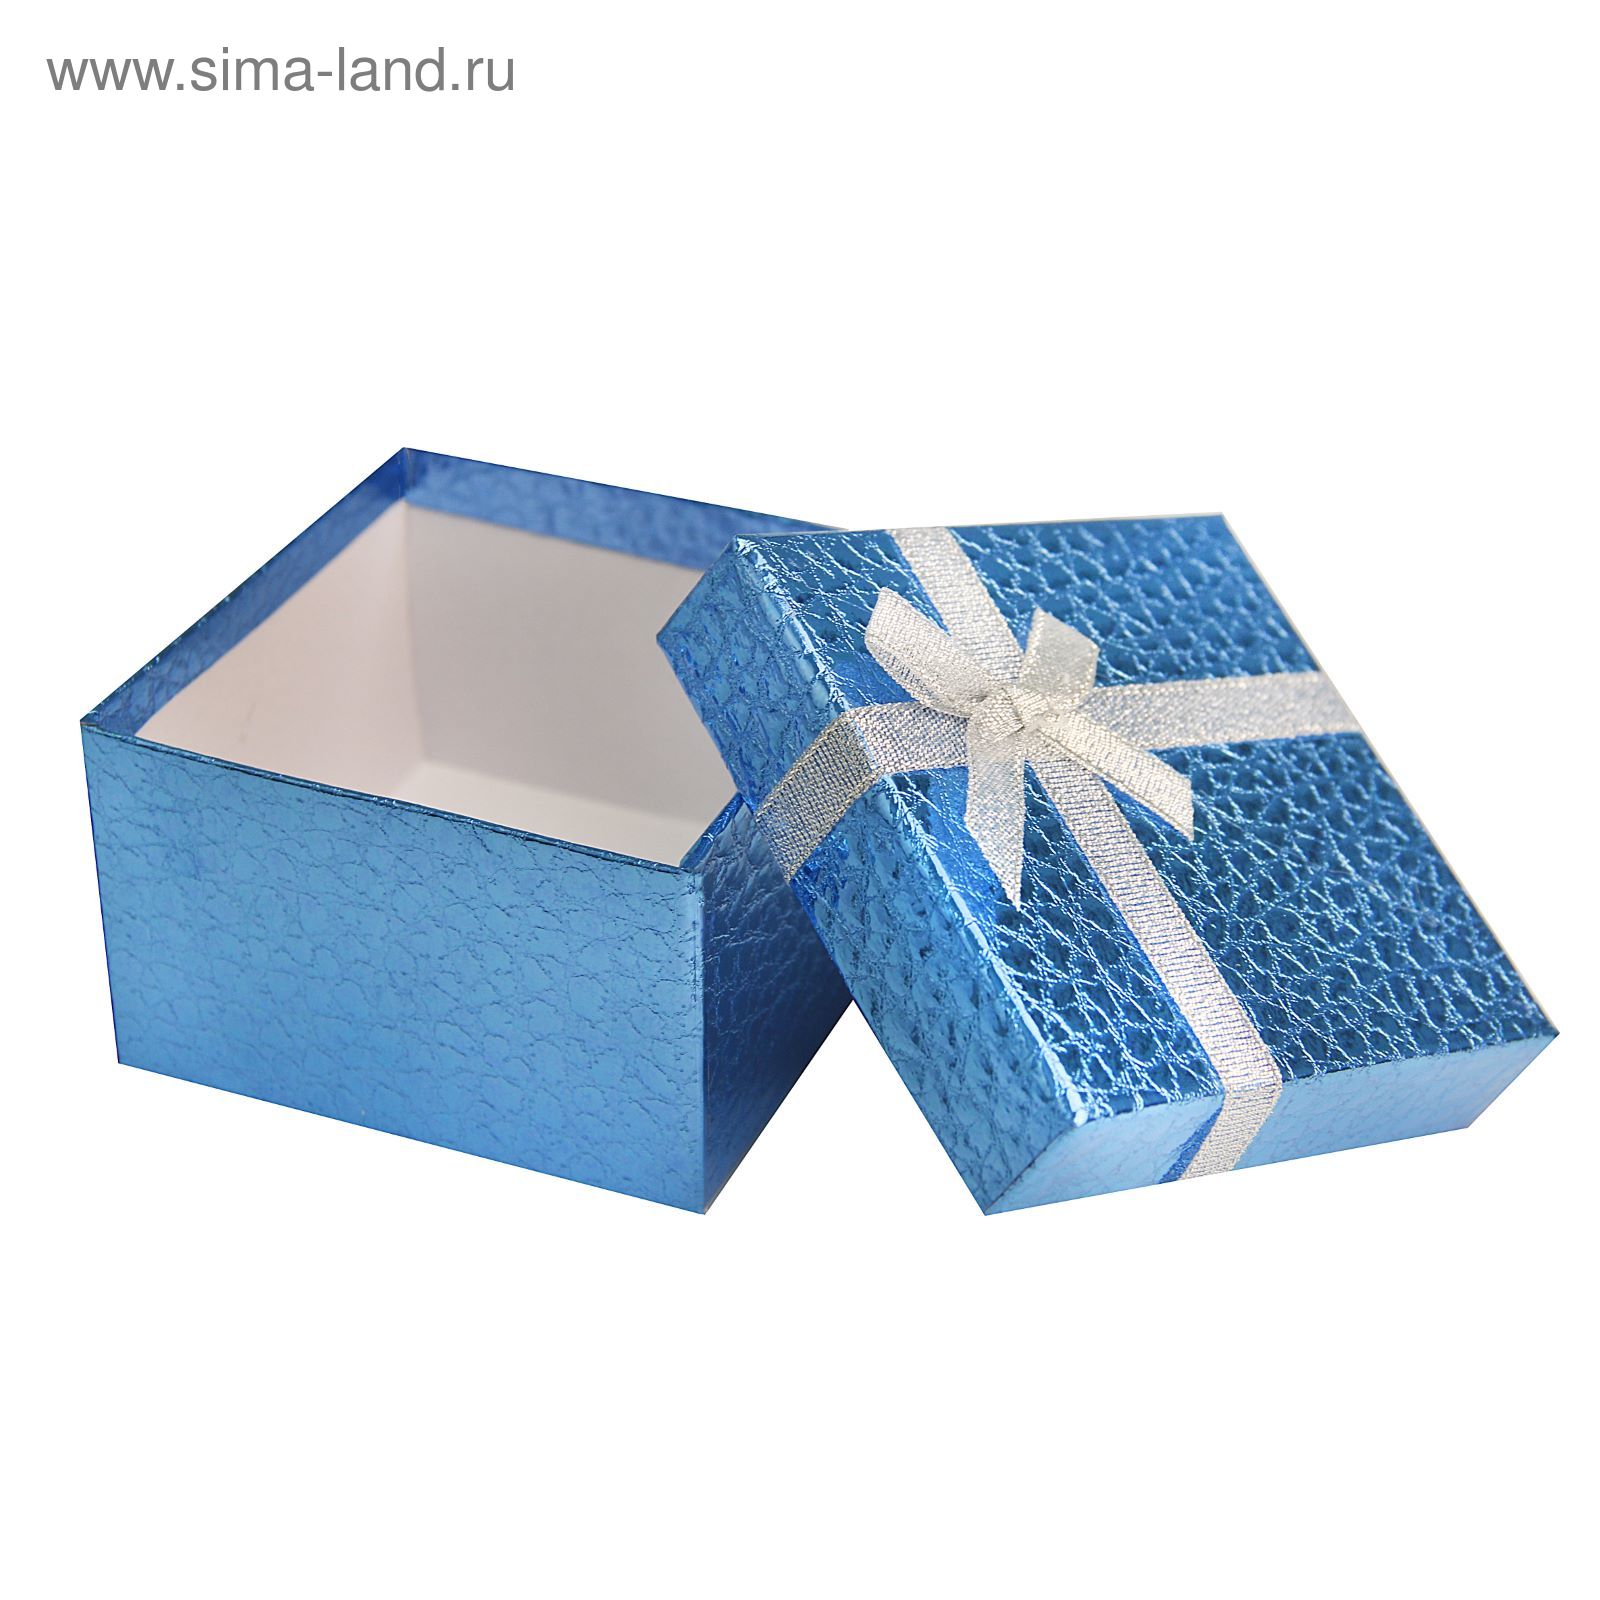 Подарок синий цвет. Подарочная коробка. Подарок синяя коробка. Коробочка голубой подарок. Подарочная коробка голубого цвета.